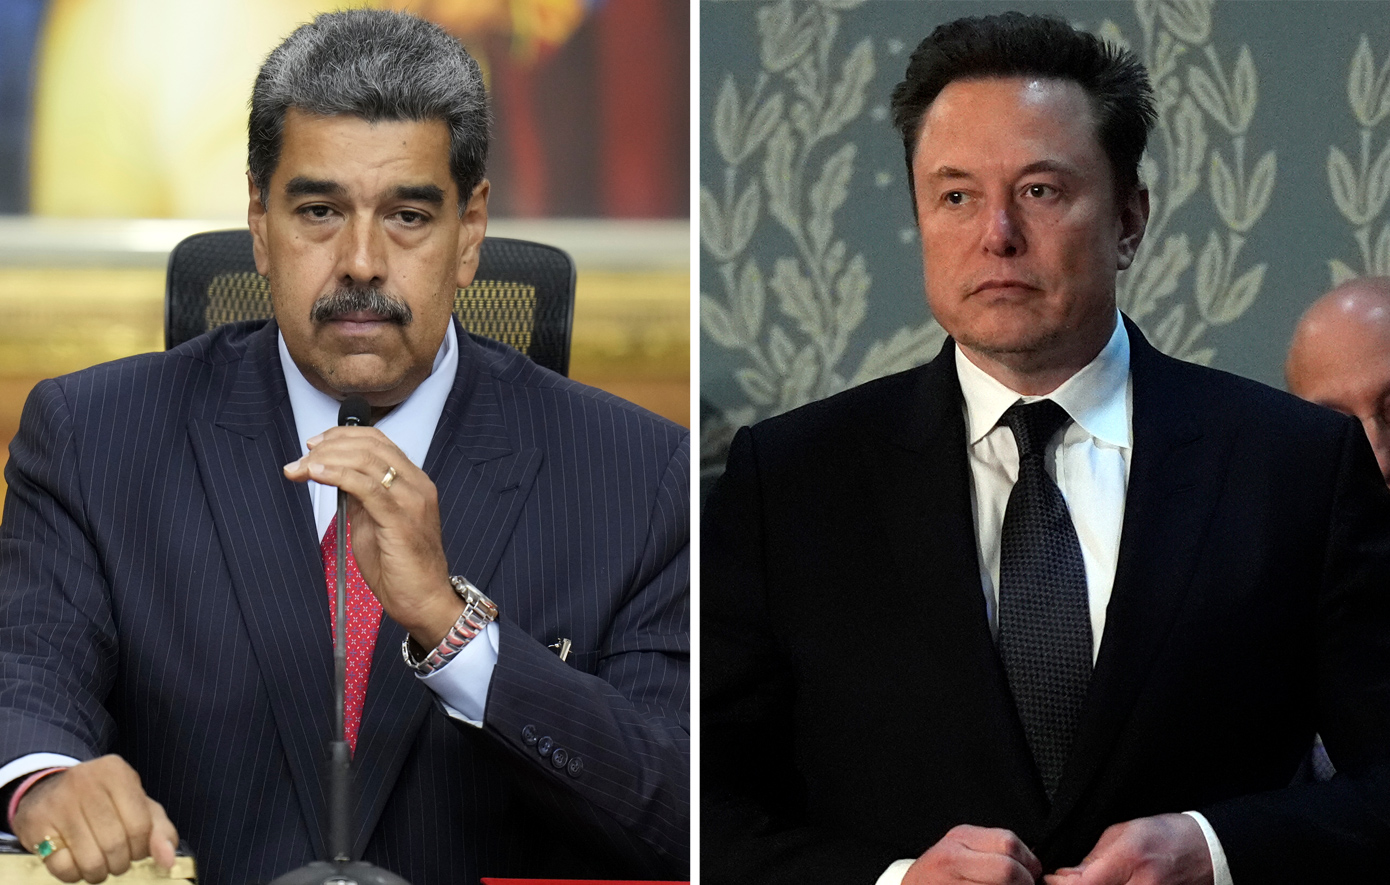 Έλον Μασκ και Μαδούρο δίνουν&#8230; ραντεβού για να πλακωθούν στο ξύλο &#8211; «Θέλει να εισβάλει στη Βενεζουέλα με τους διαστημικούς πυραύλους του»